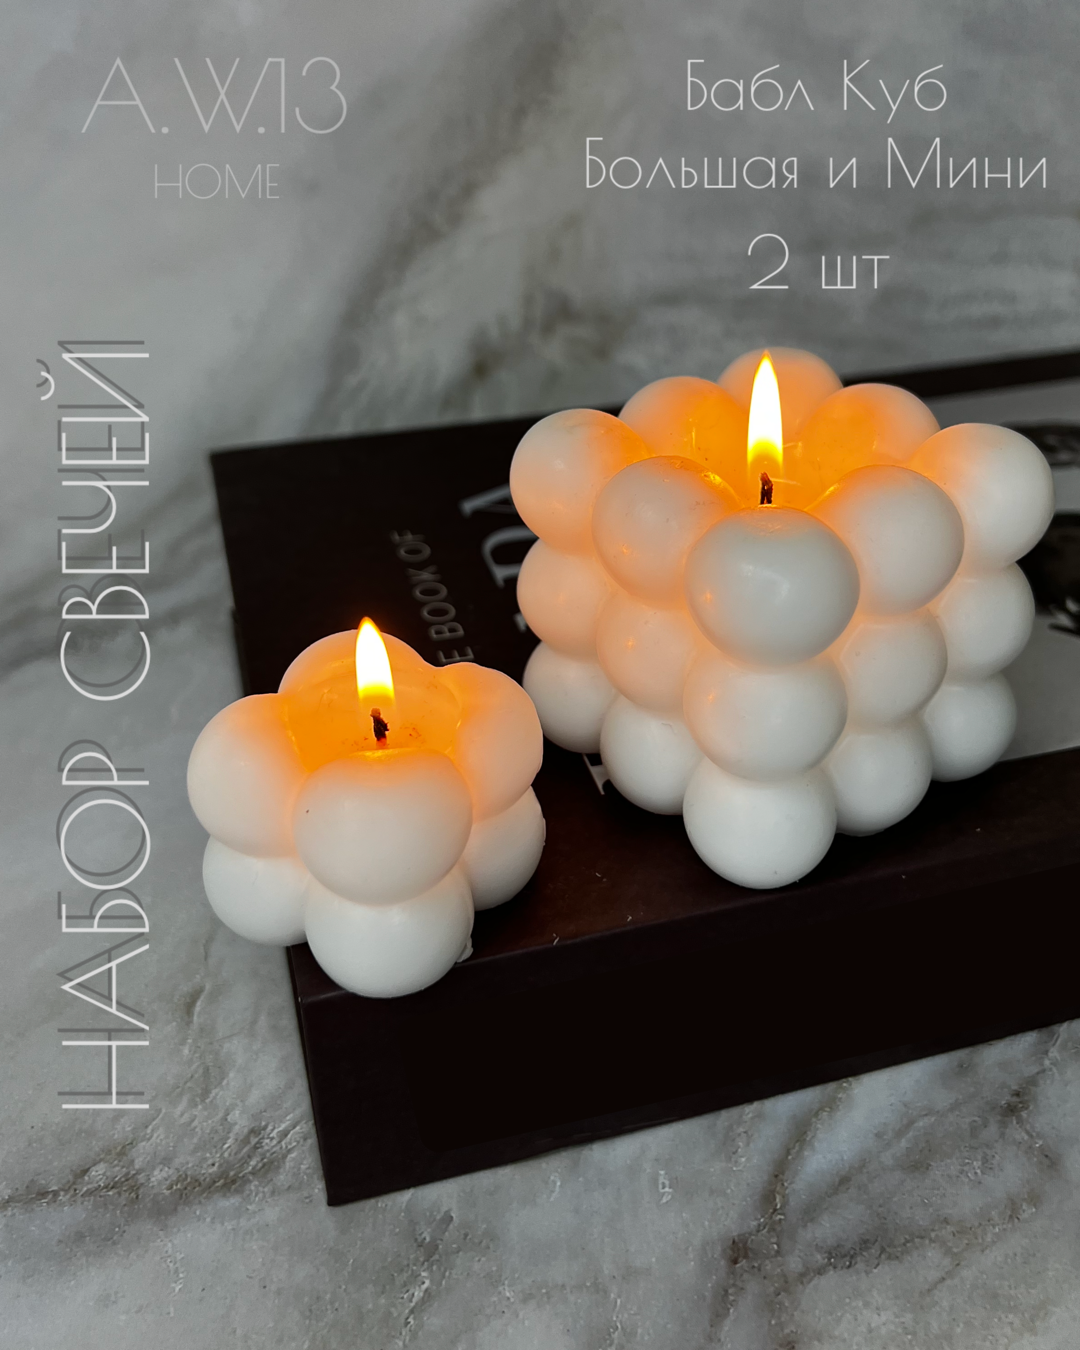 Набор декоративных свечей "Бабл Куб" большая и малая, интерьерные свечи 2 шт